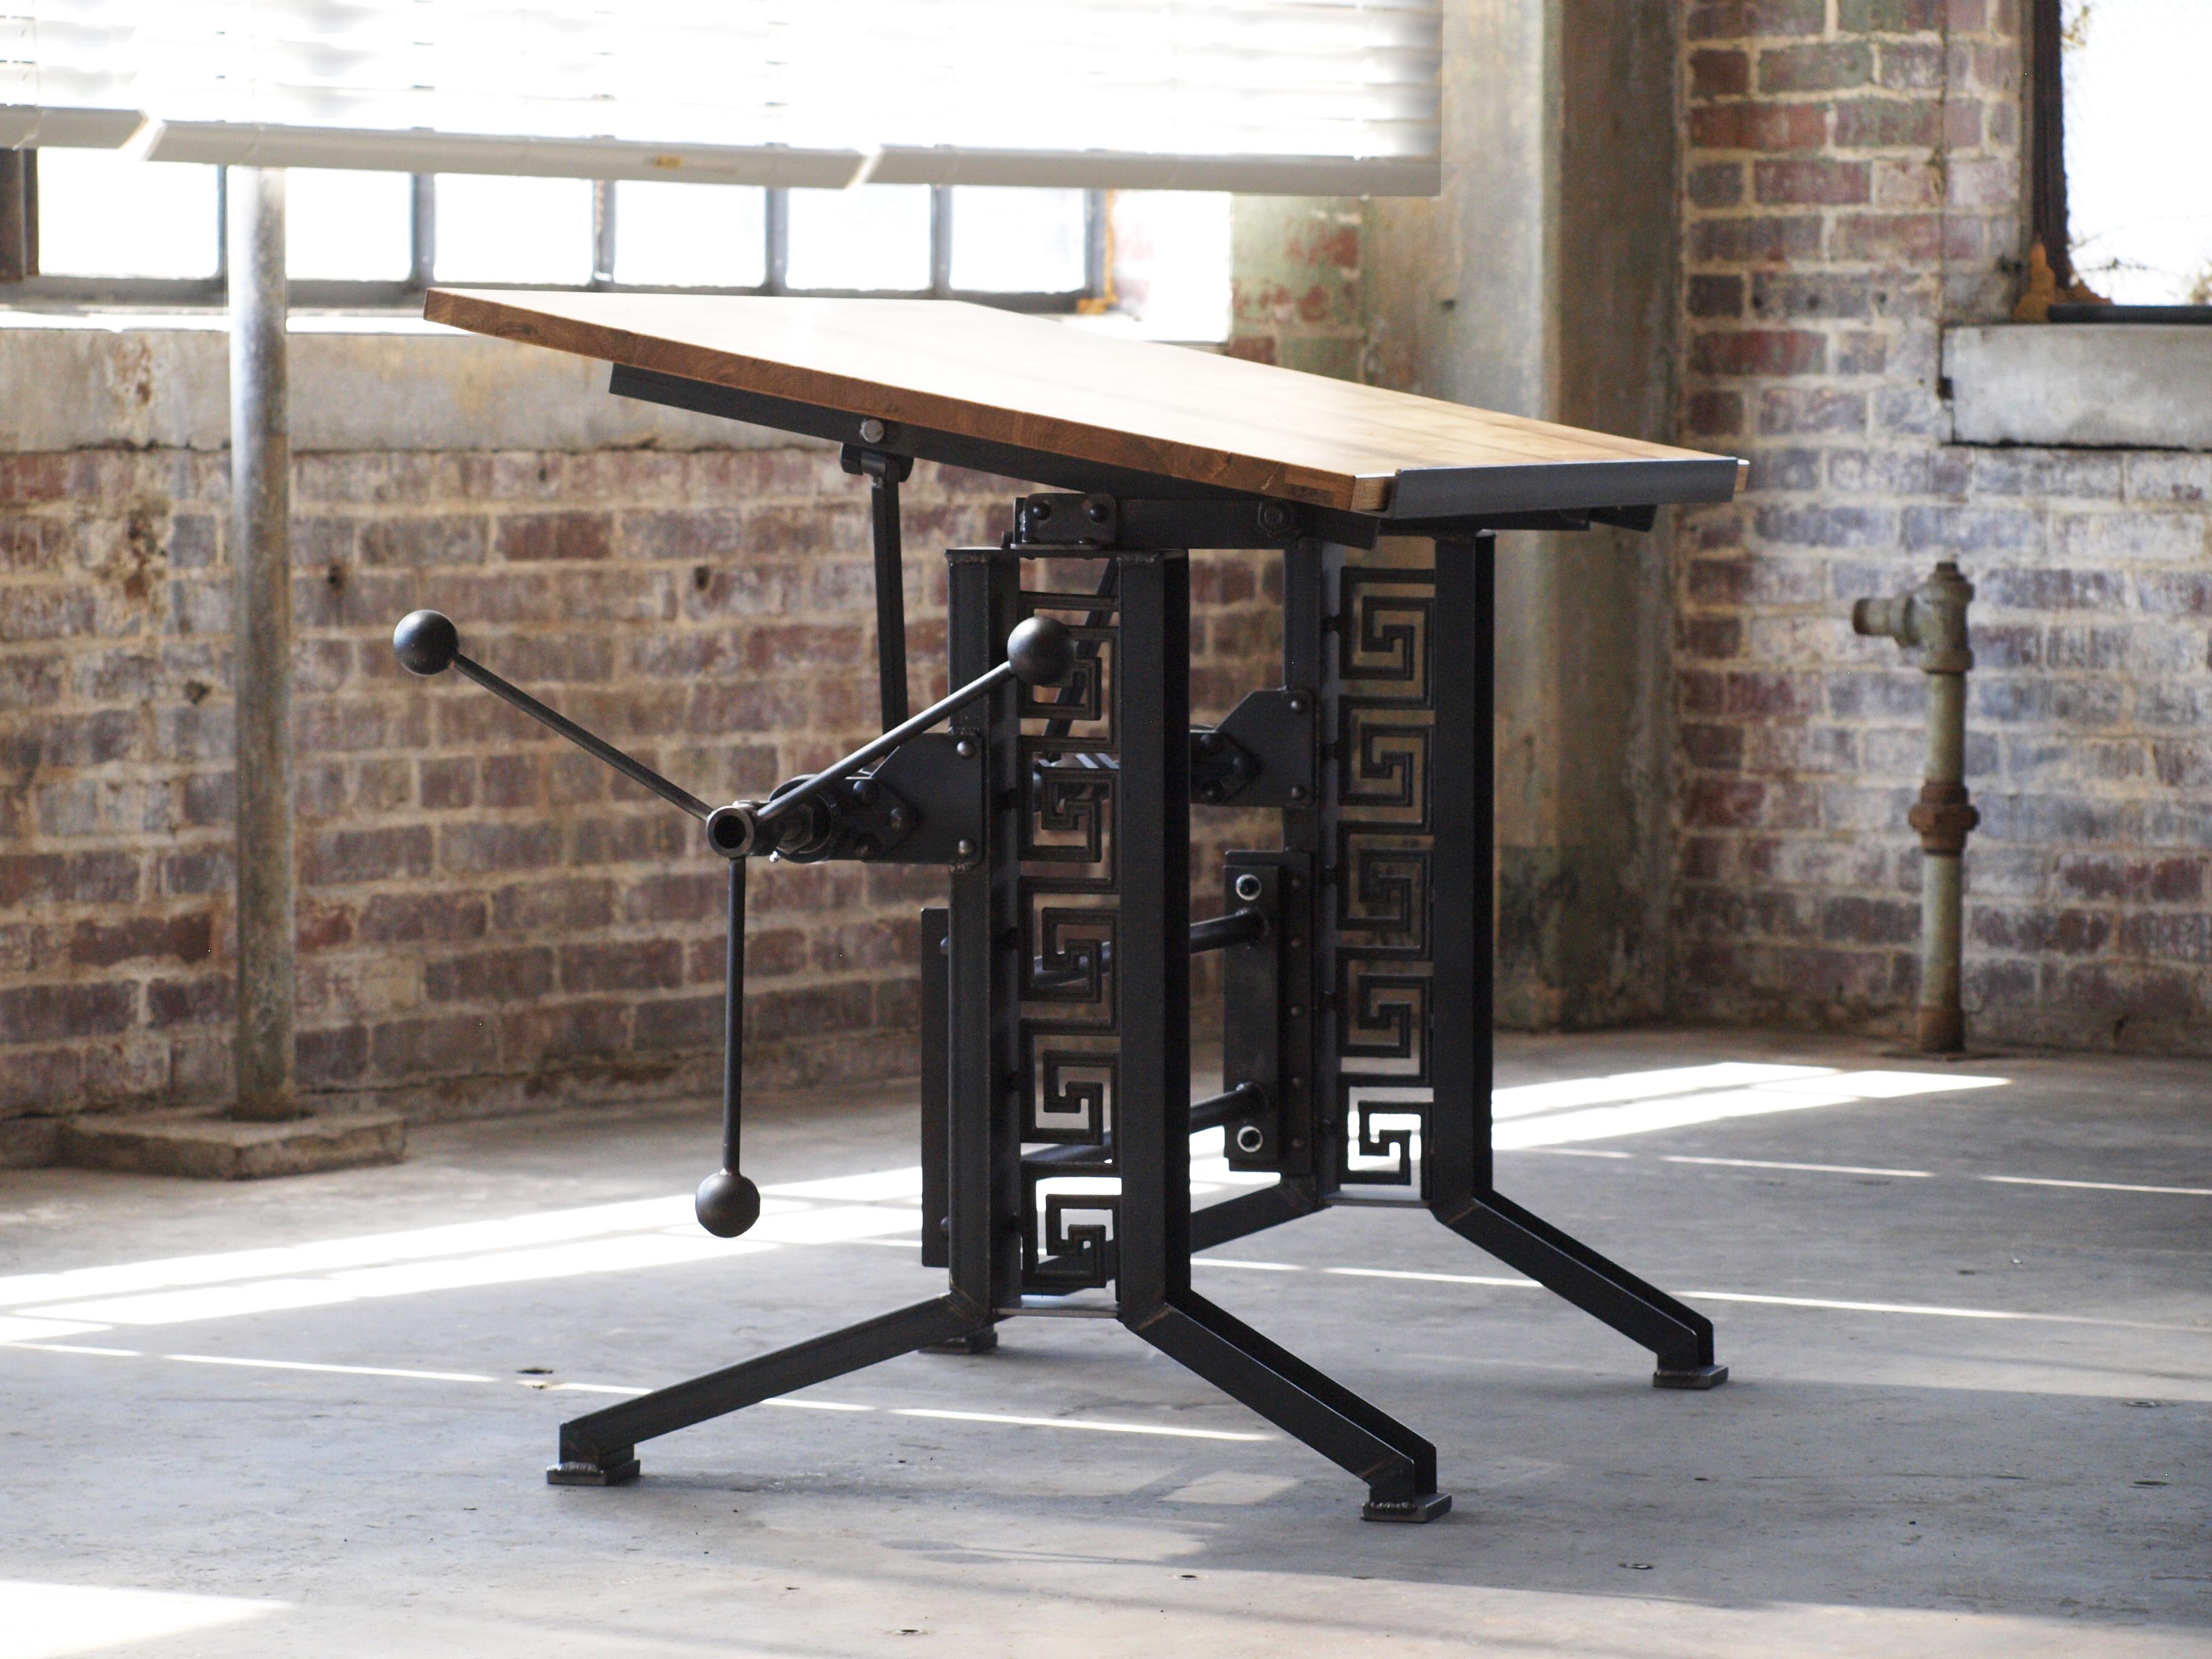 Der Drafting Table mit französischer Eichenplatte ist ein durchdachtes und fachmännisch gefertigtes Möbelstück. Hergestellt in den USA und unter Verwendung von überwiegend einheimischen Materialien wie Eichenholz und Stahl, verkörpert er eine